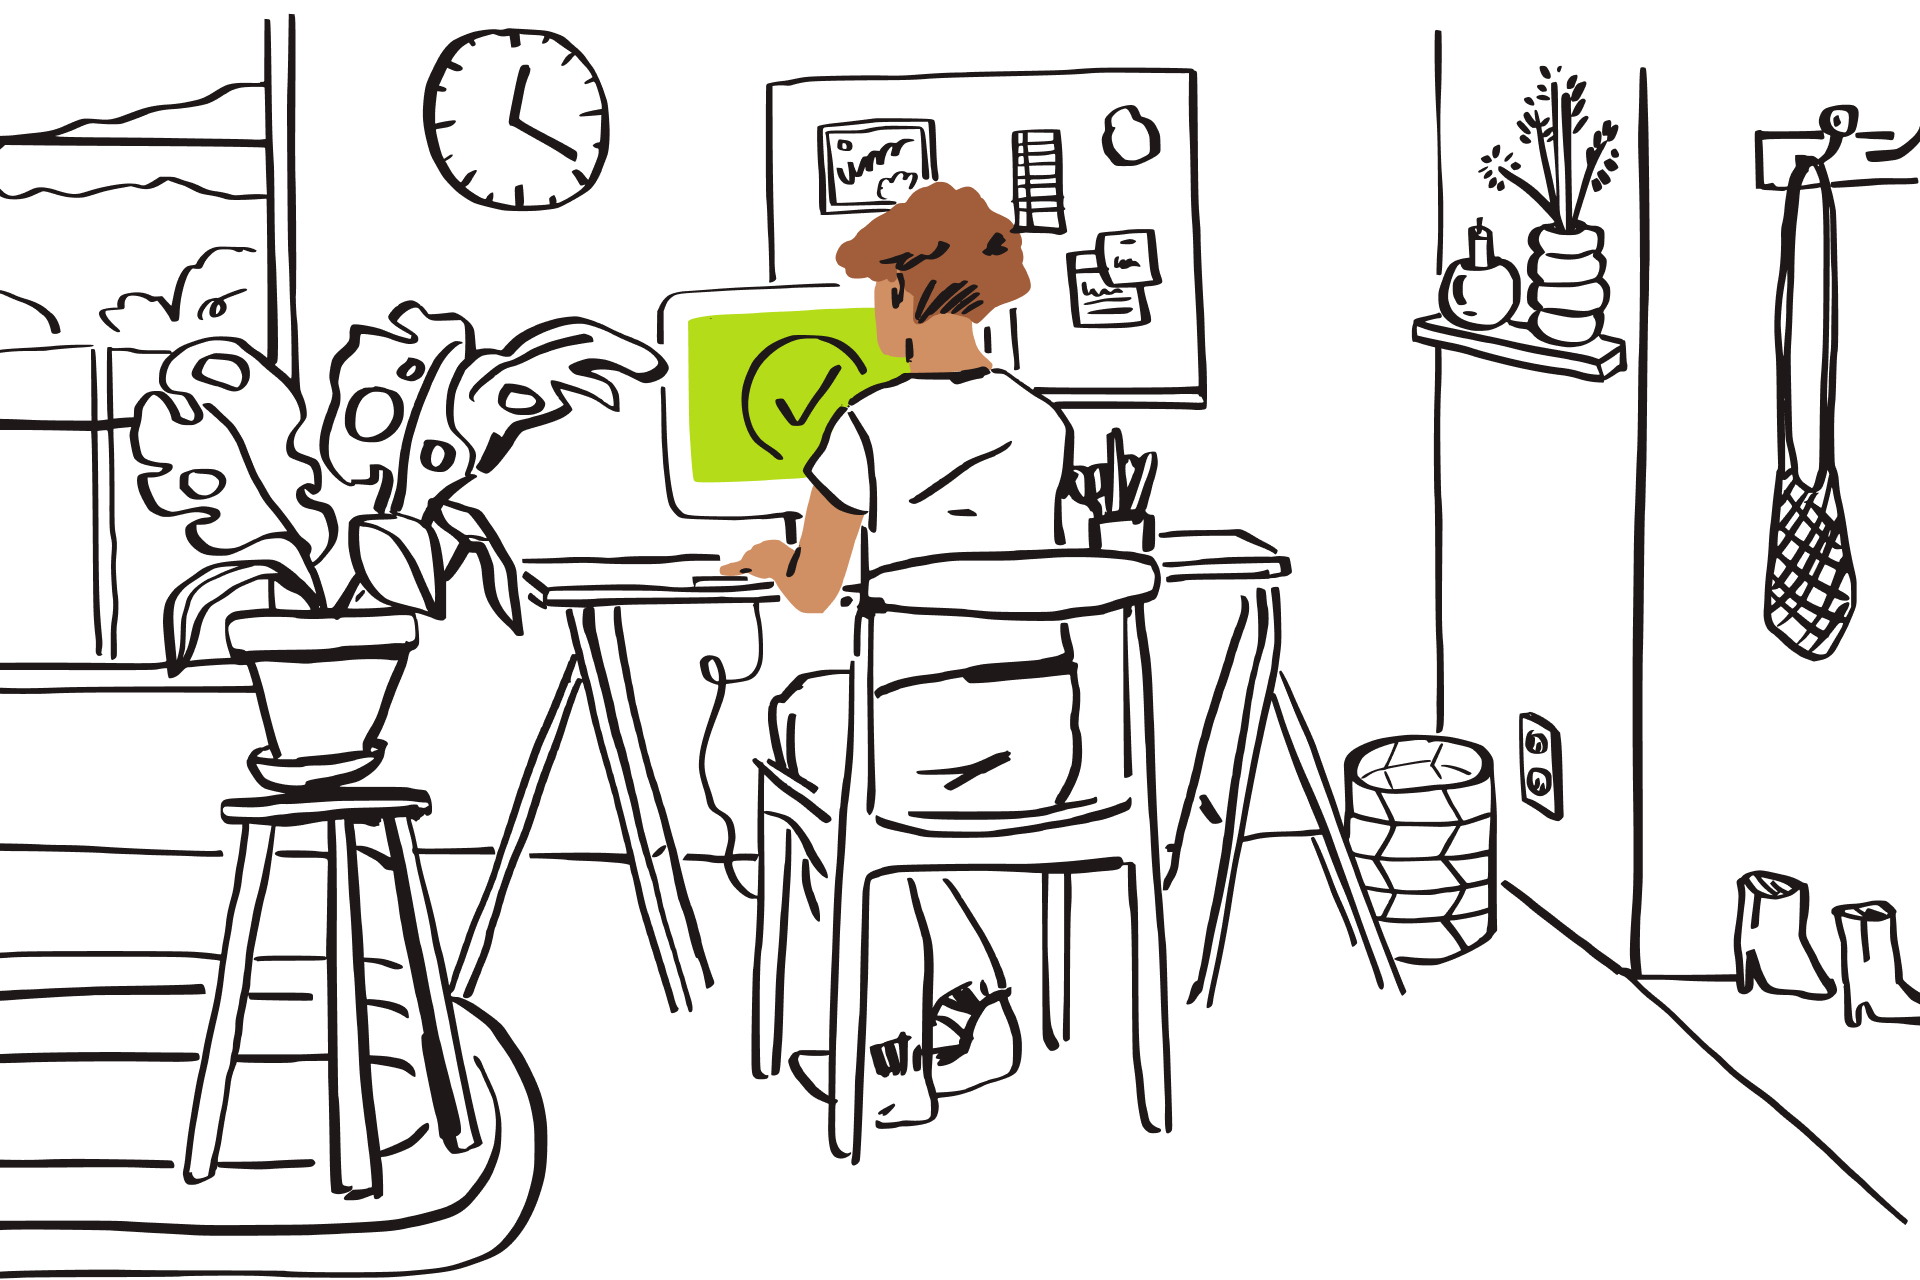 Иллюстрация: человек печатает за компьютером, на зеленом экране которого изображена галочка.